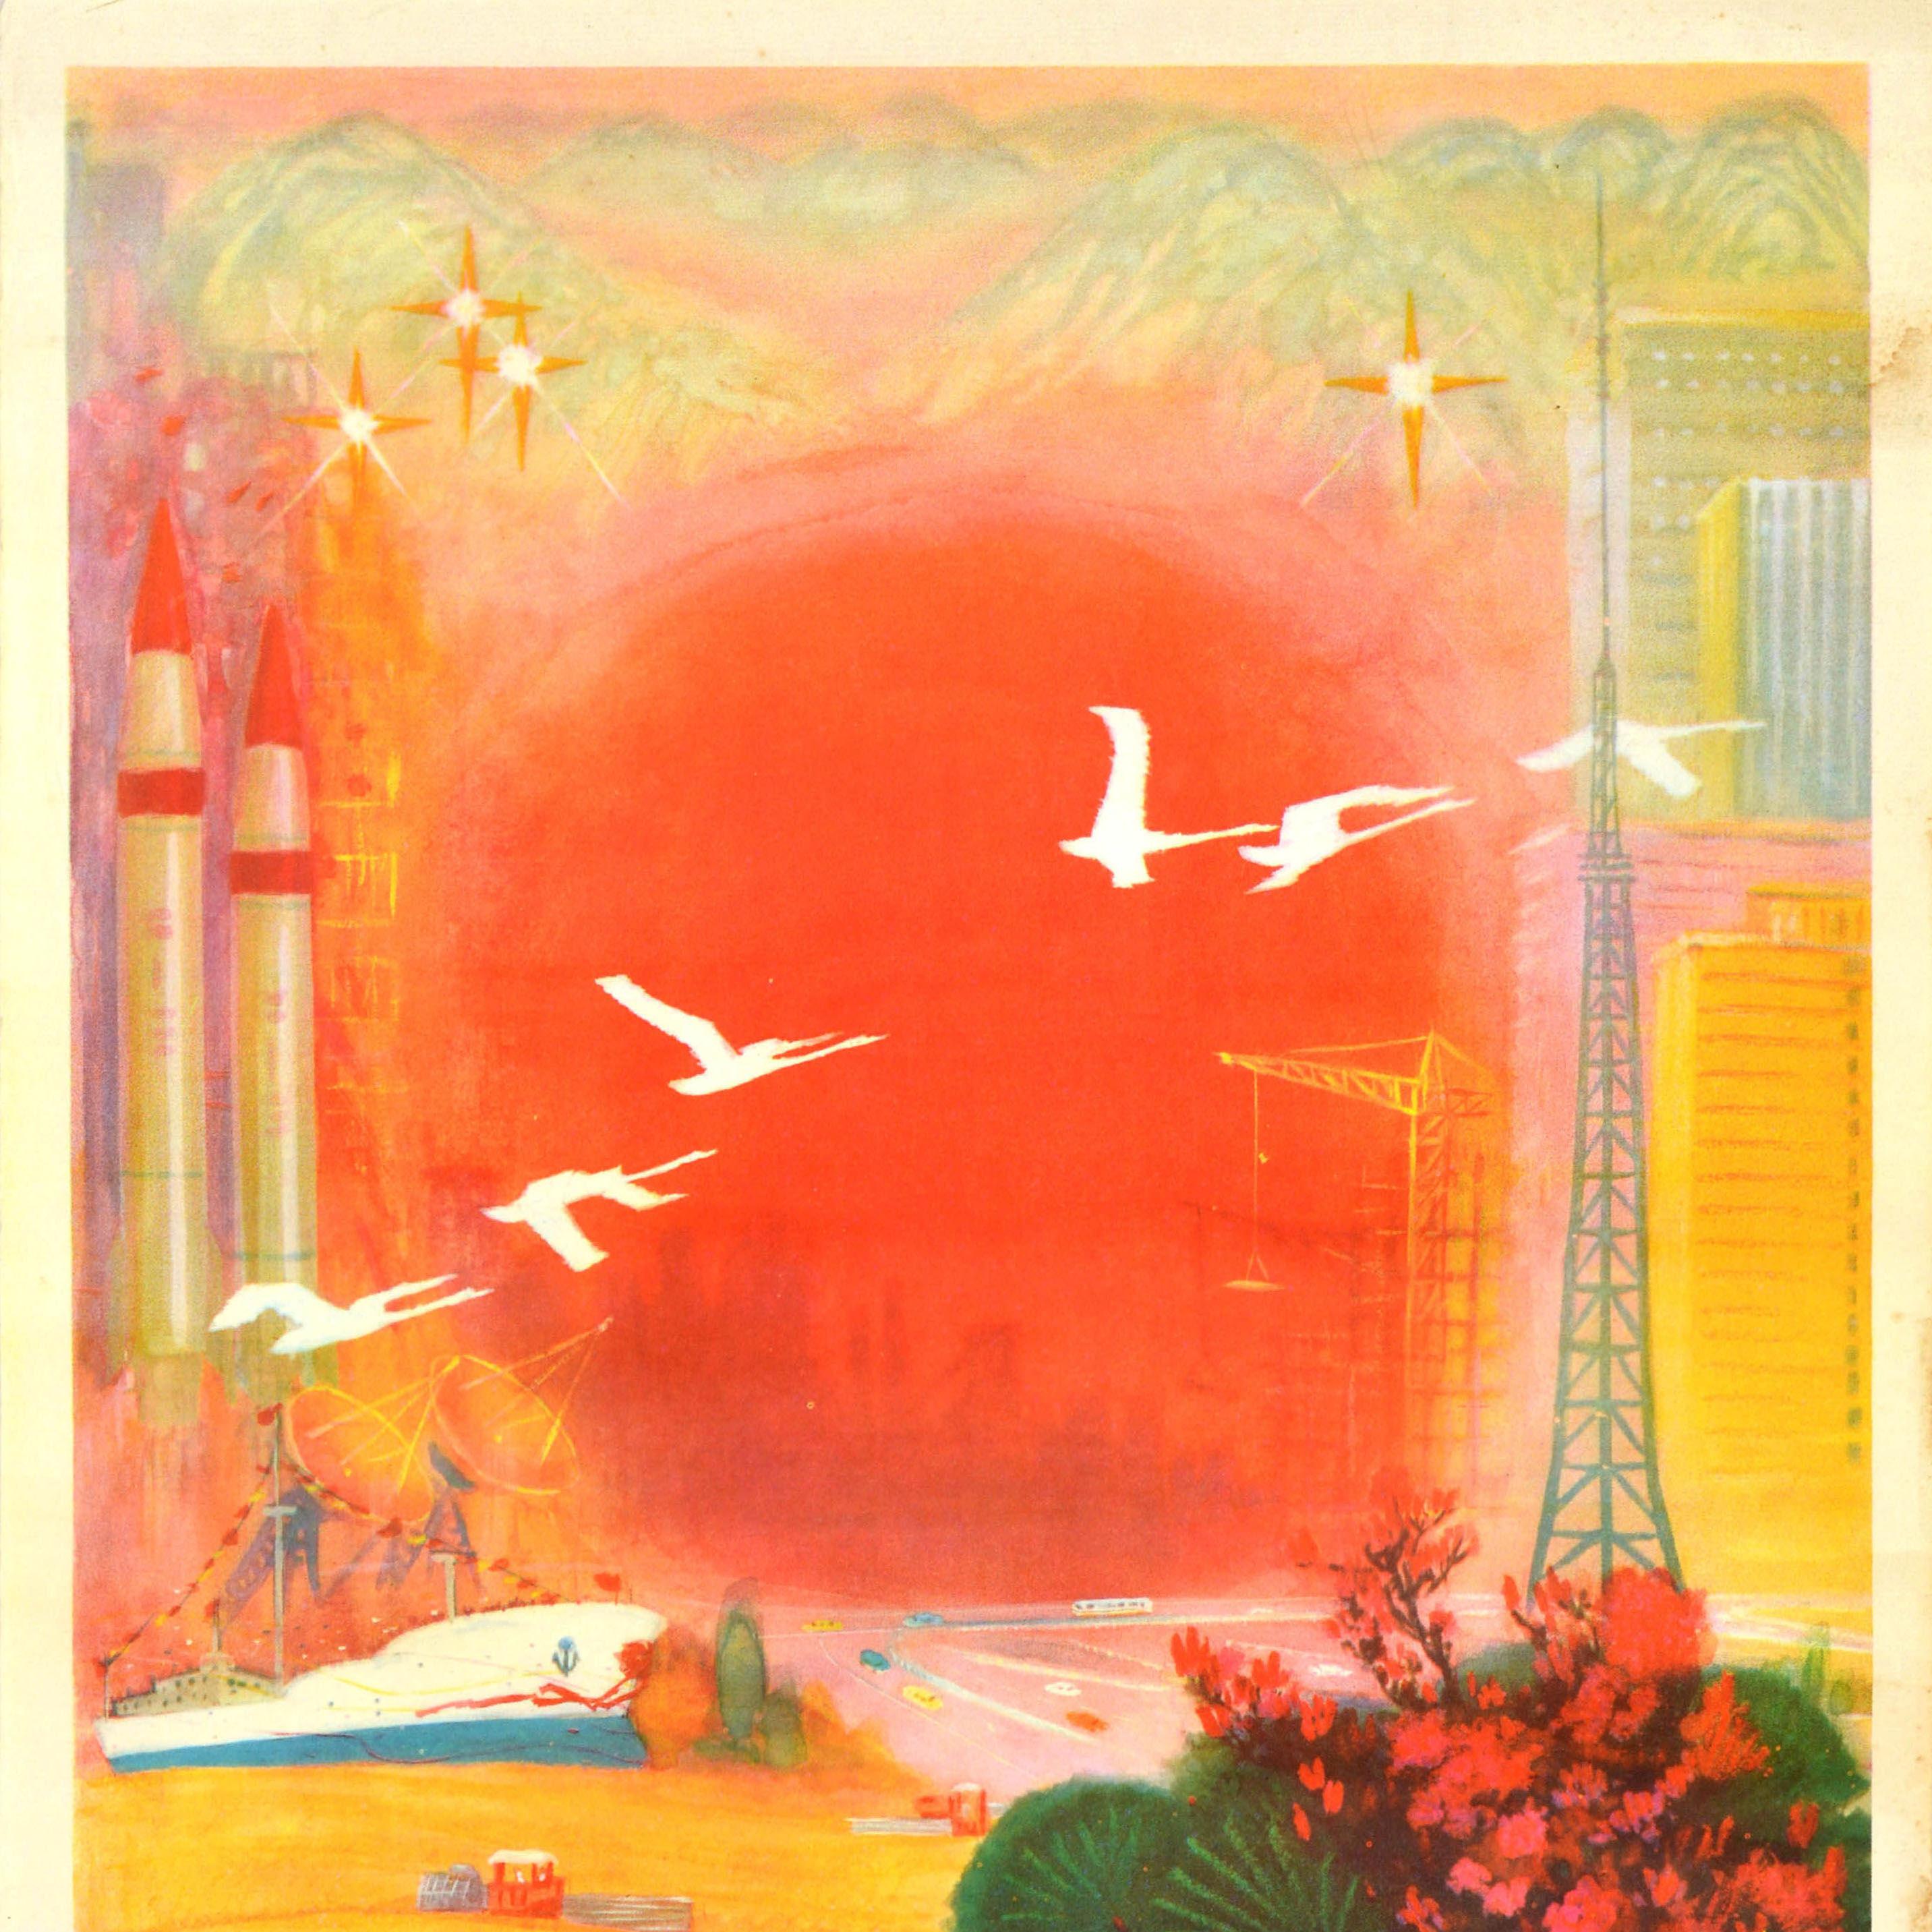 Affiche de propagande vintage du Parti communiste chinois - Unissons-nous et travaillons dur pour construire les quatre modernisations / 团结奋斗 建设四化 - présentant une illustration d'oiseaux blancs volant au-dessus d'une route très fréquentée, d'un